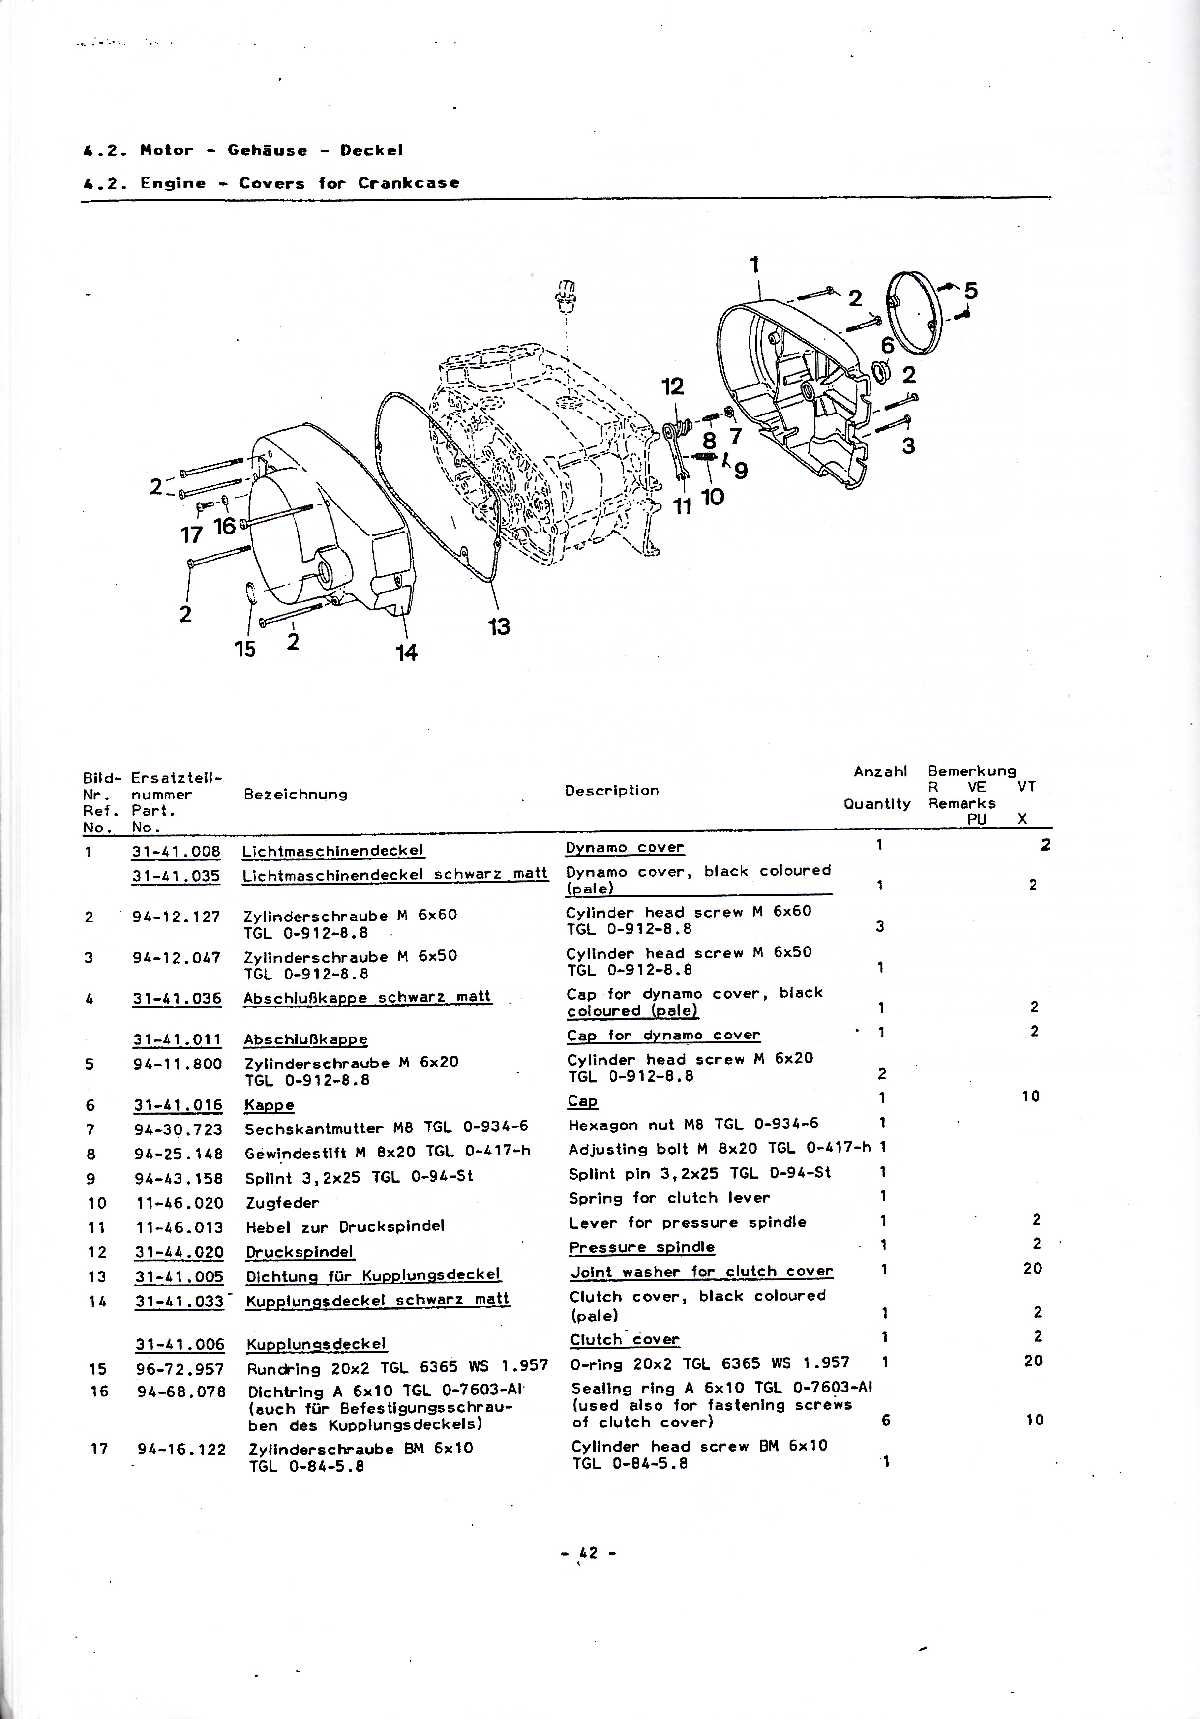 Katalog MZ 150 ETZ, MZ 125 ETZ - 4.2. Engine - Covers for Crankcase